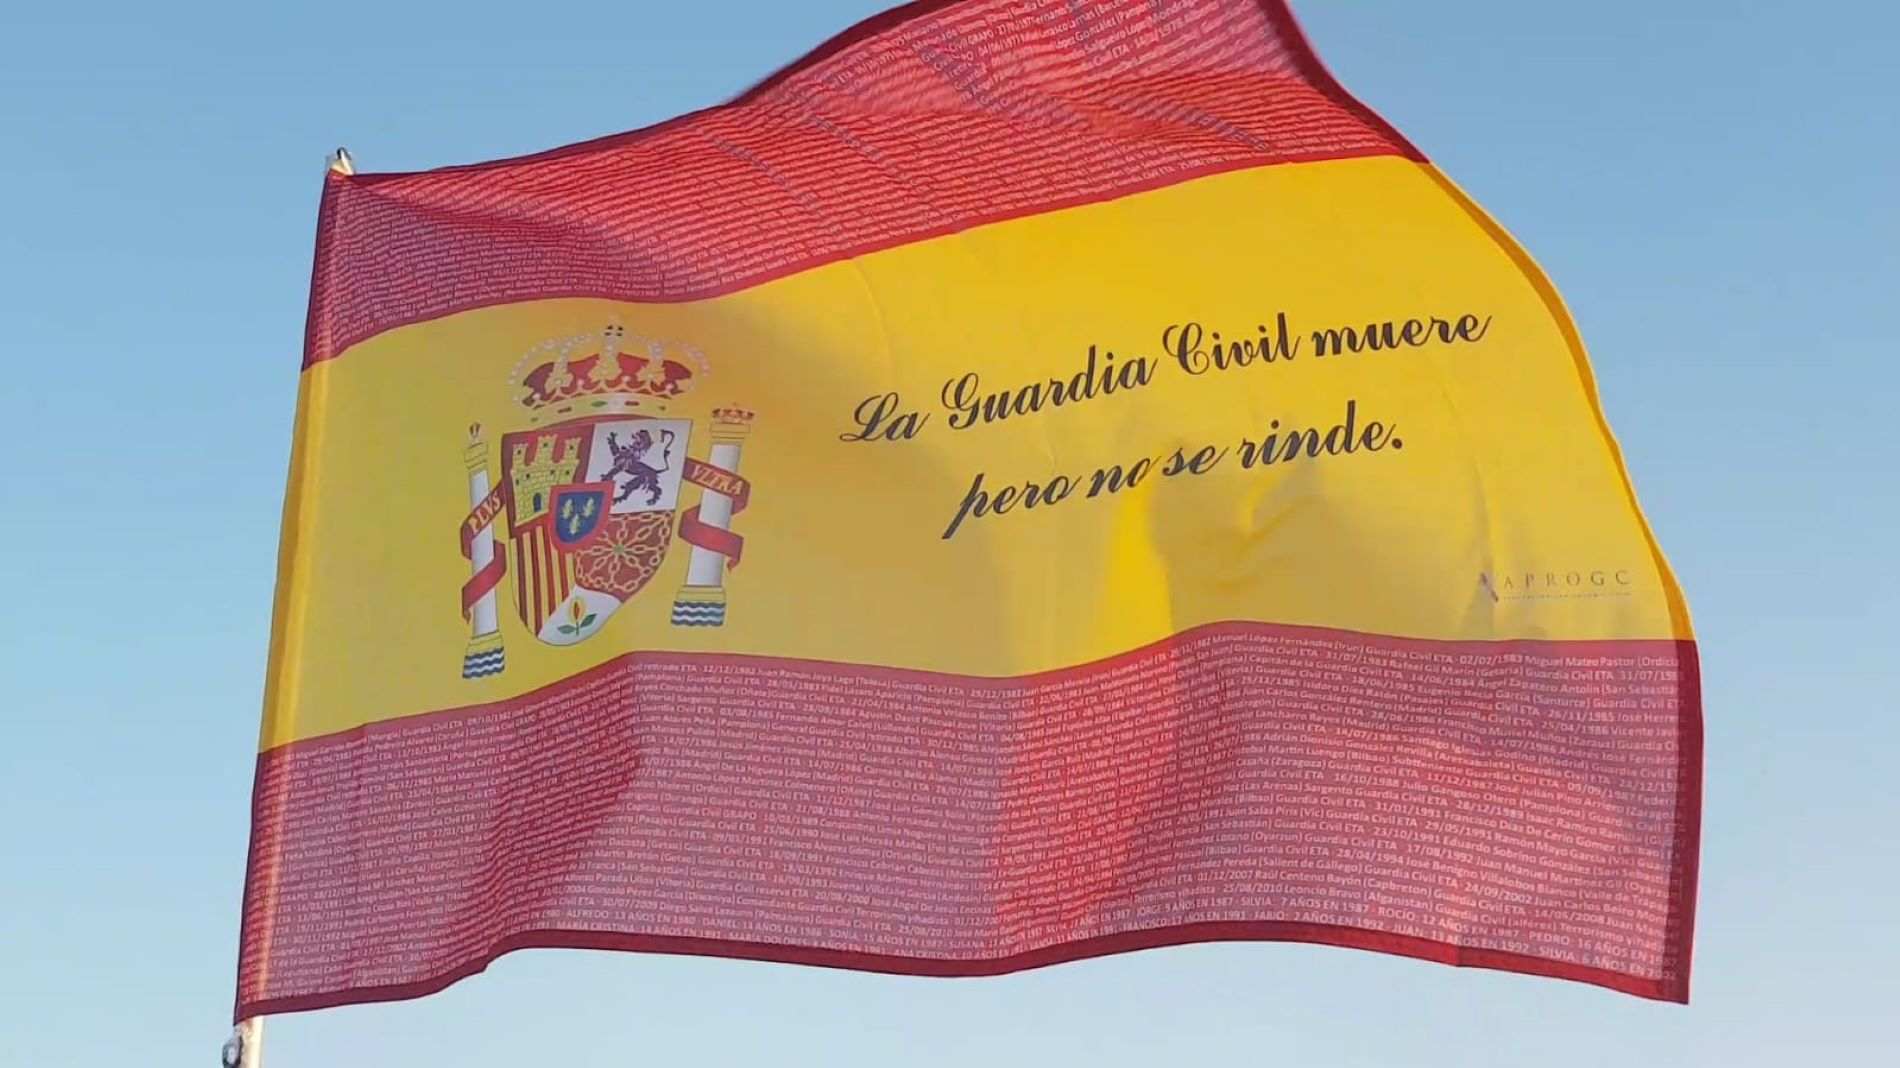 Què és i què predica l'Aprogc, l'associació de guàrdies civils disposats a morir per Espanya